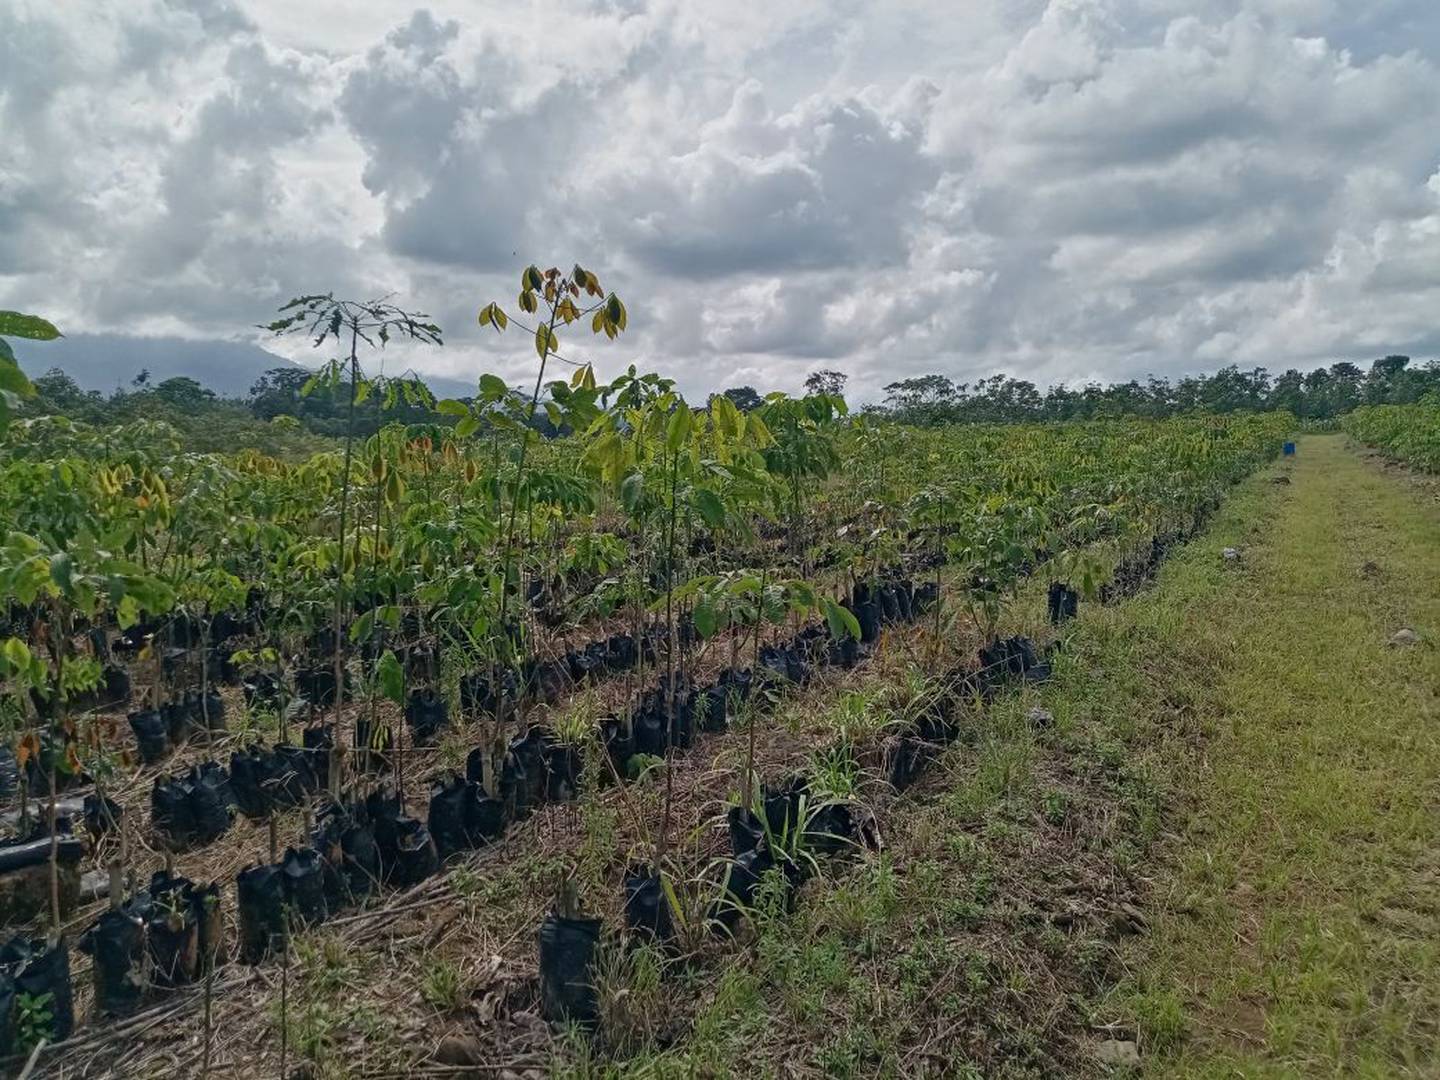 La Cooperativa de Fomento y Desarrollo para la Reforestación Sostenible (Cooprolatex), dedicada al cultivo de hule, busca a 120 pequeños y medianos agricultores de San Carlos, Upala, Limón y Talamanca, entre otras zonas, que estén interesados en sembrar hule